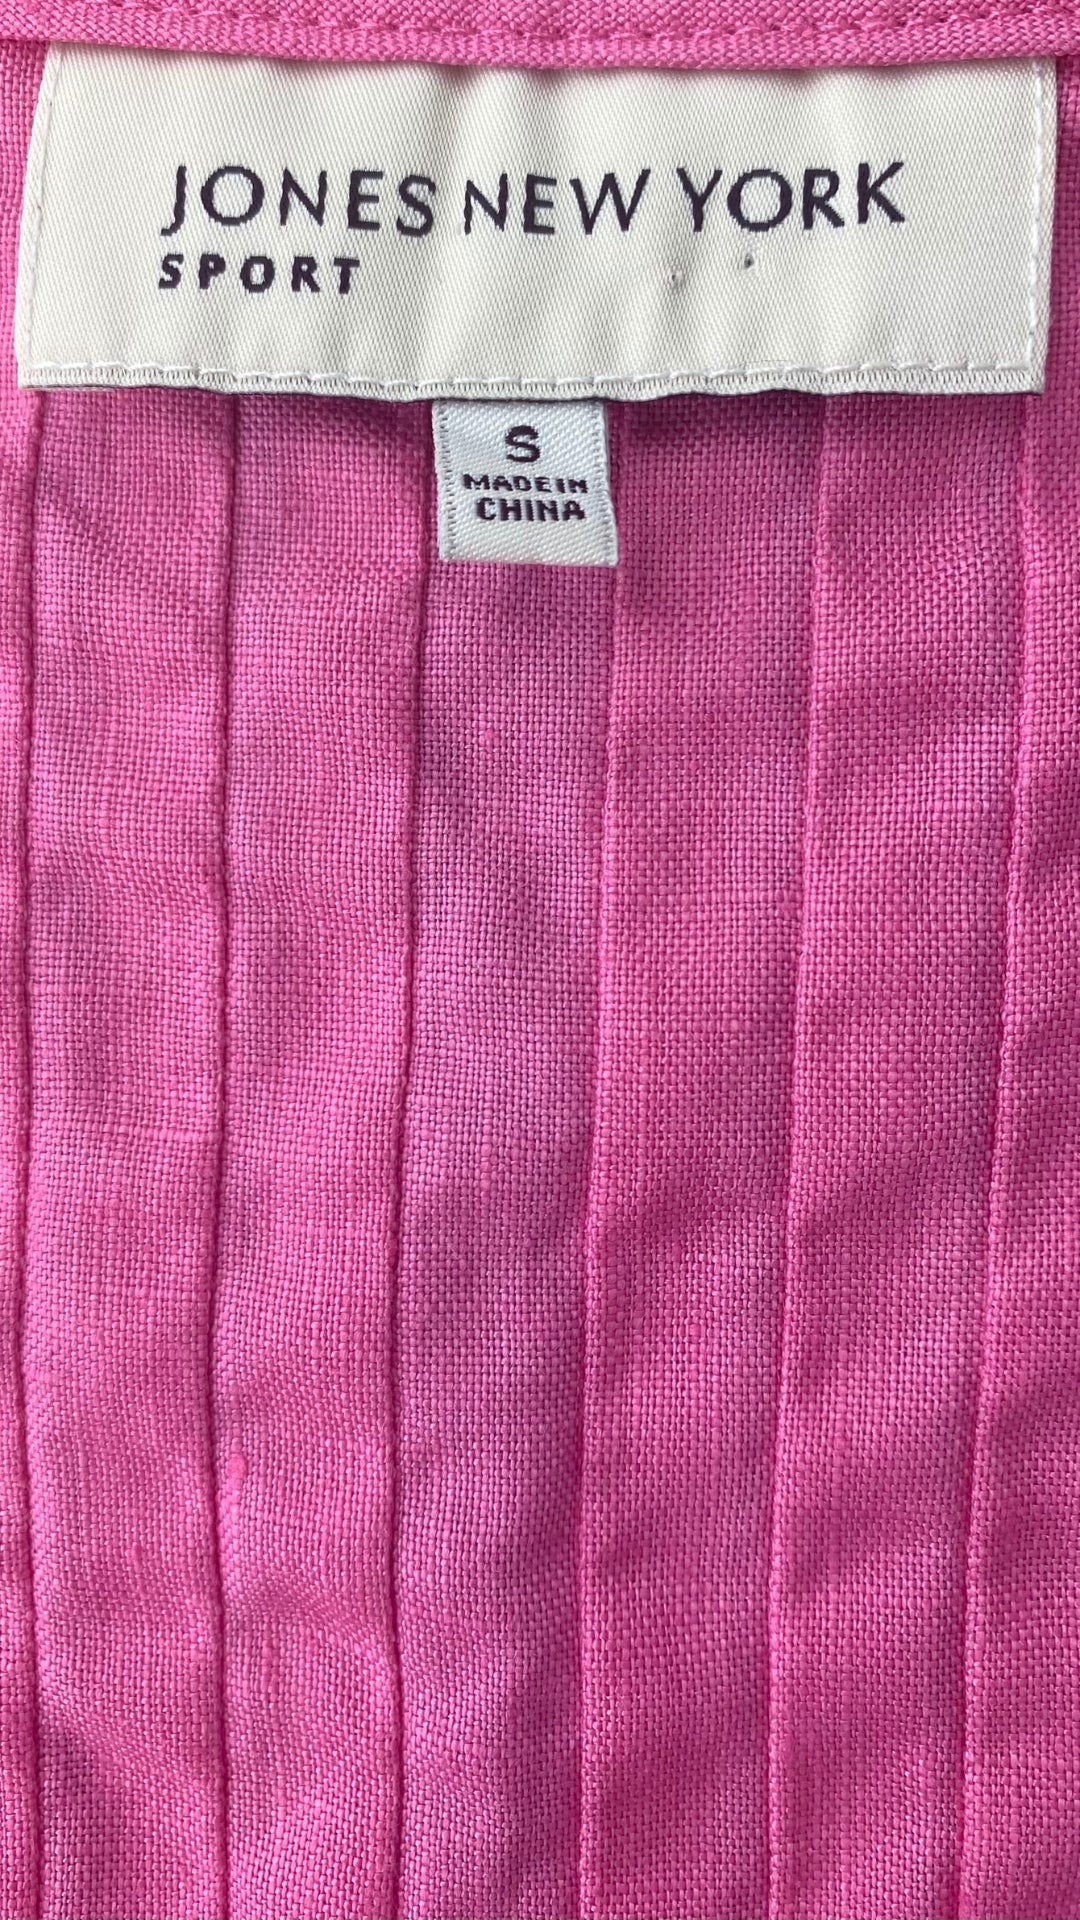 Blouse sans manches en lin rose, corsage plissé, Jones New York Sport, taille small. Vue de l'étiquette de marque et taille.